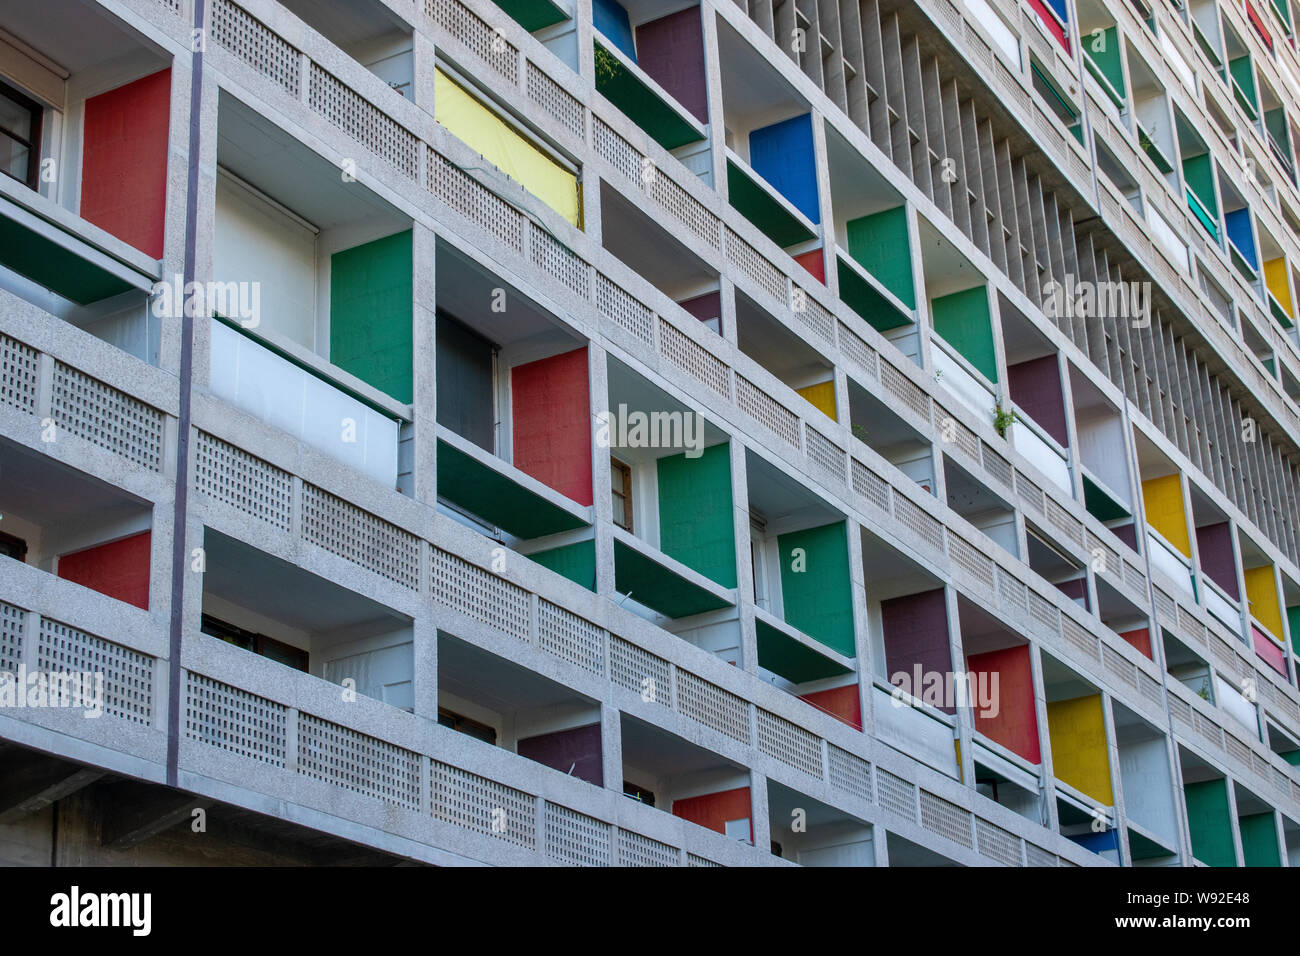 Cité radieuse, aussi connu comme la maison du fada - construction résidentielle à Marseille, France, conçu par l'architecte Le Corbusier Banque D'Images